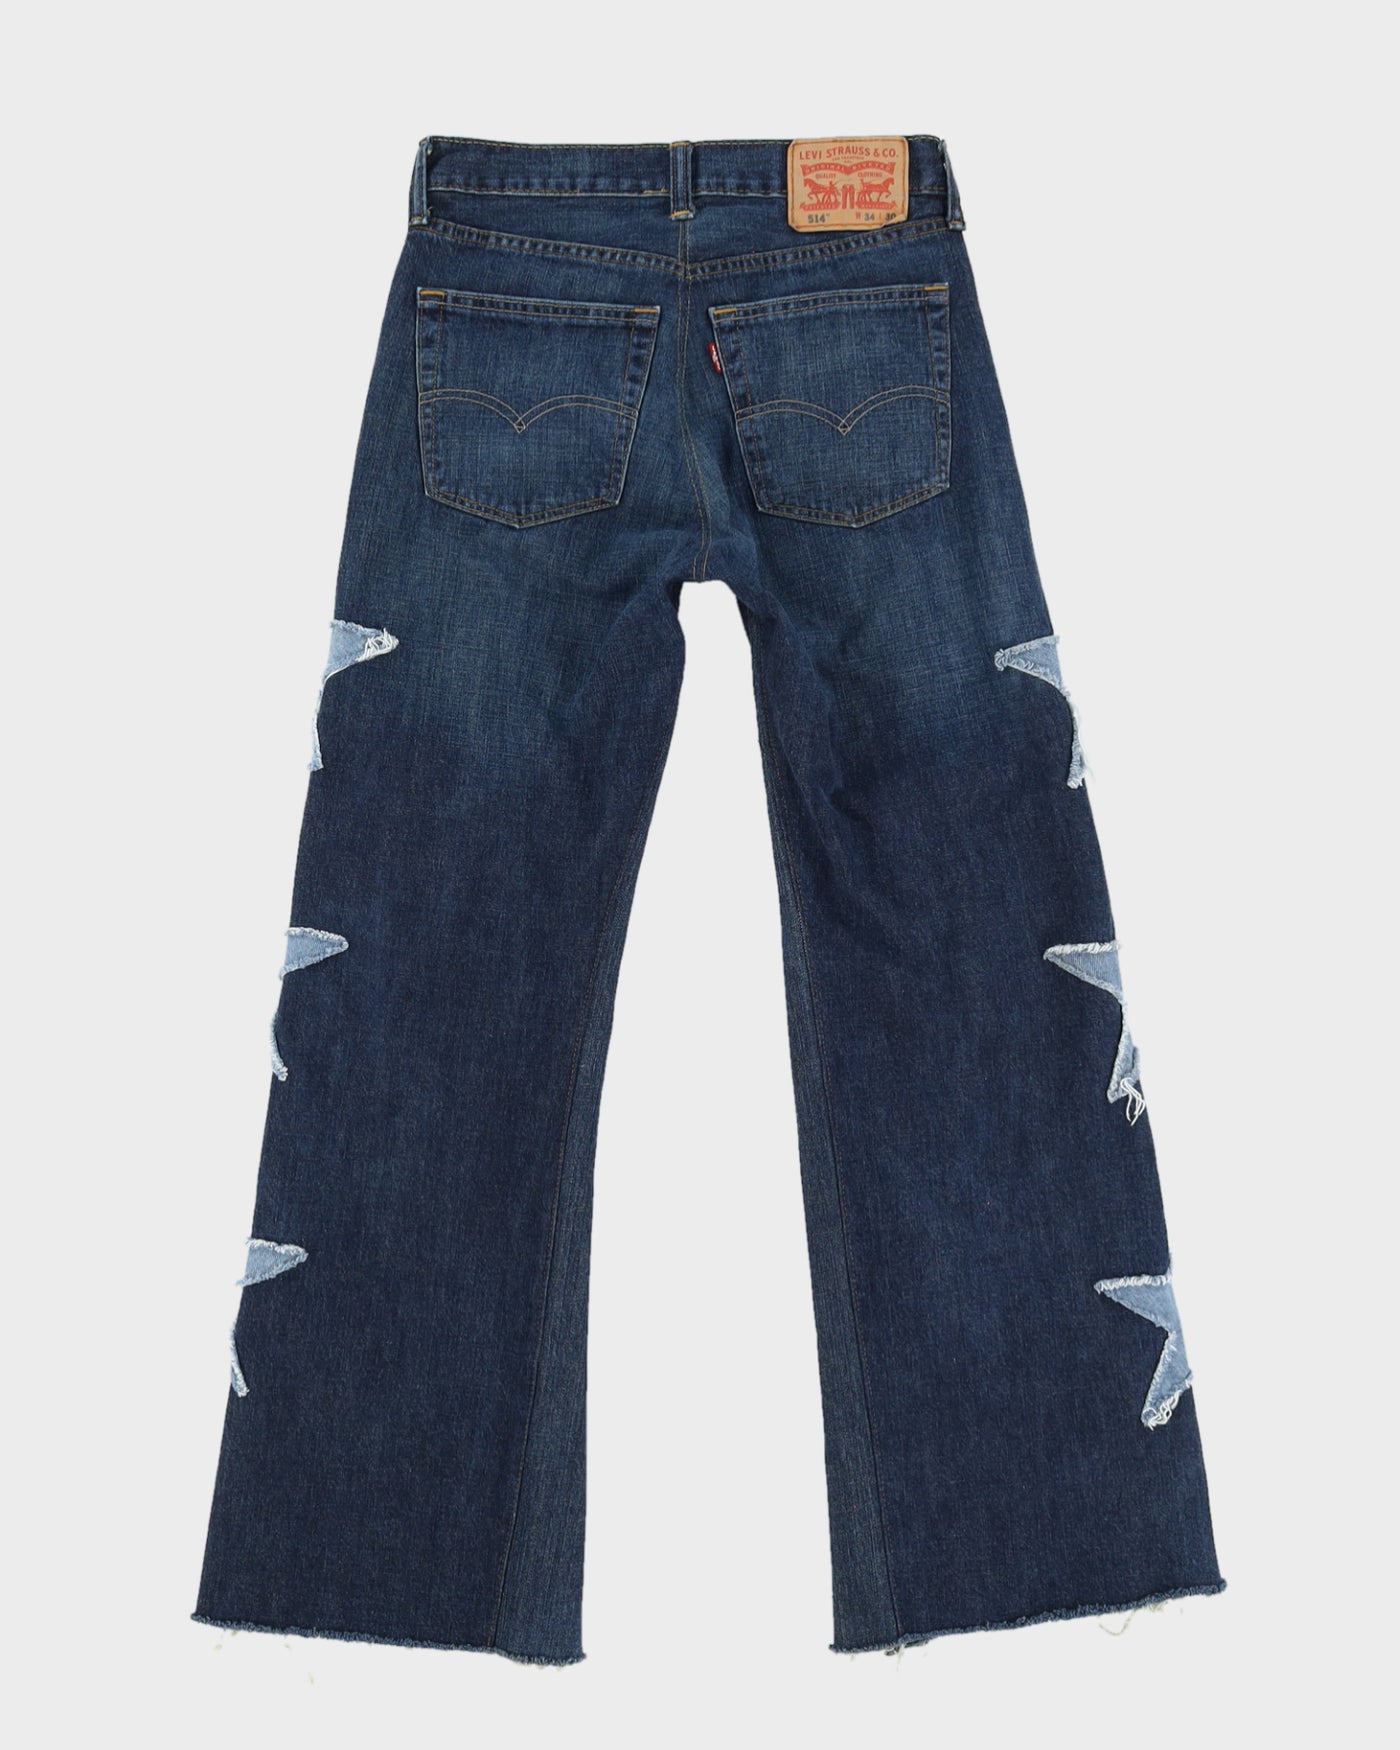 Priscilla Jeans - W29 L30